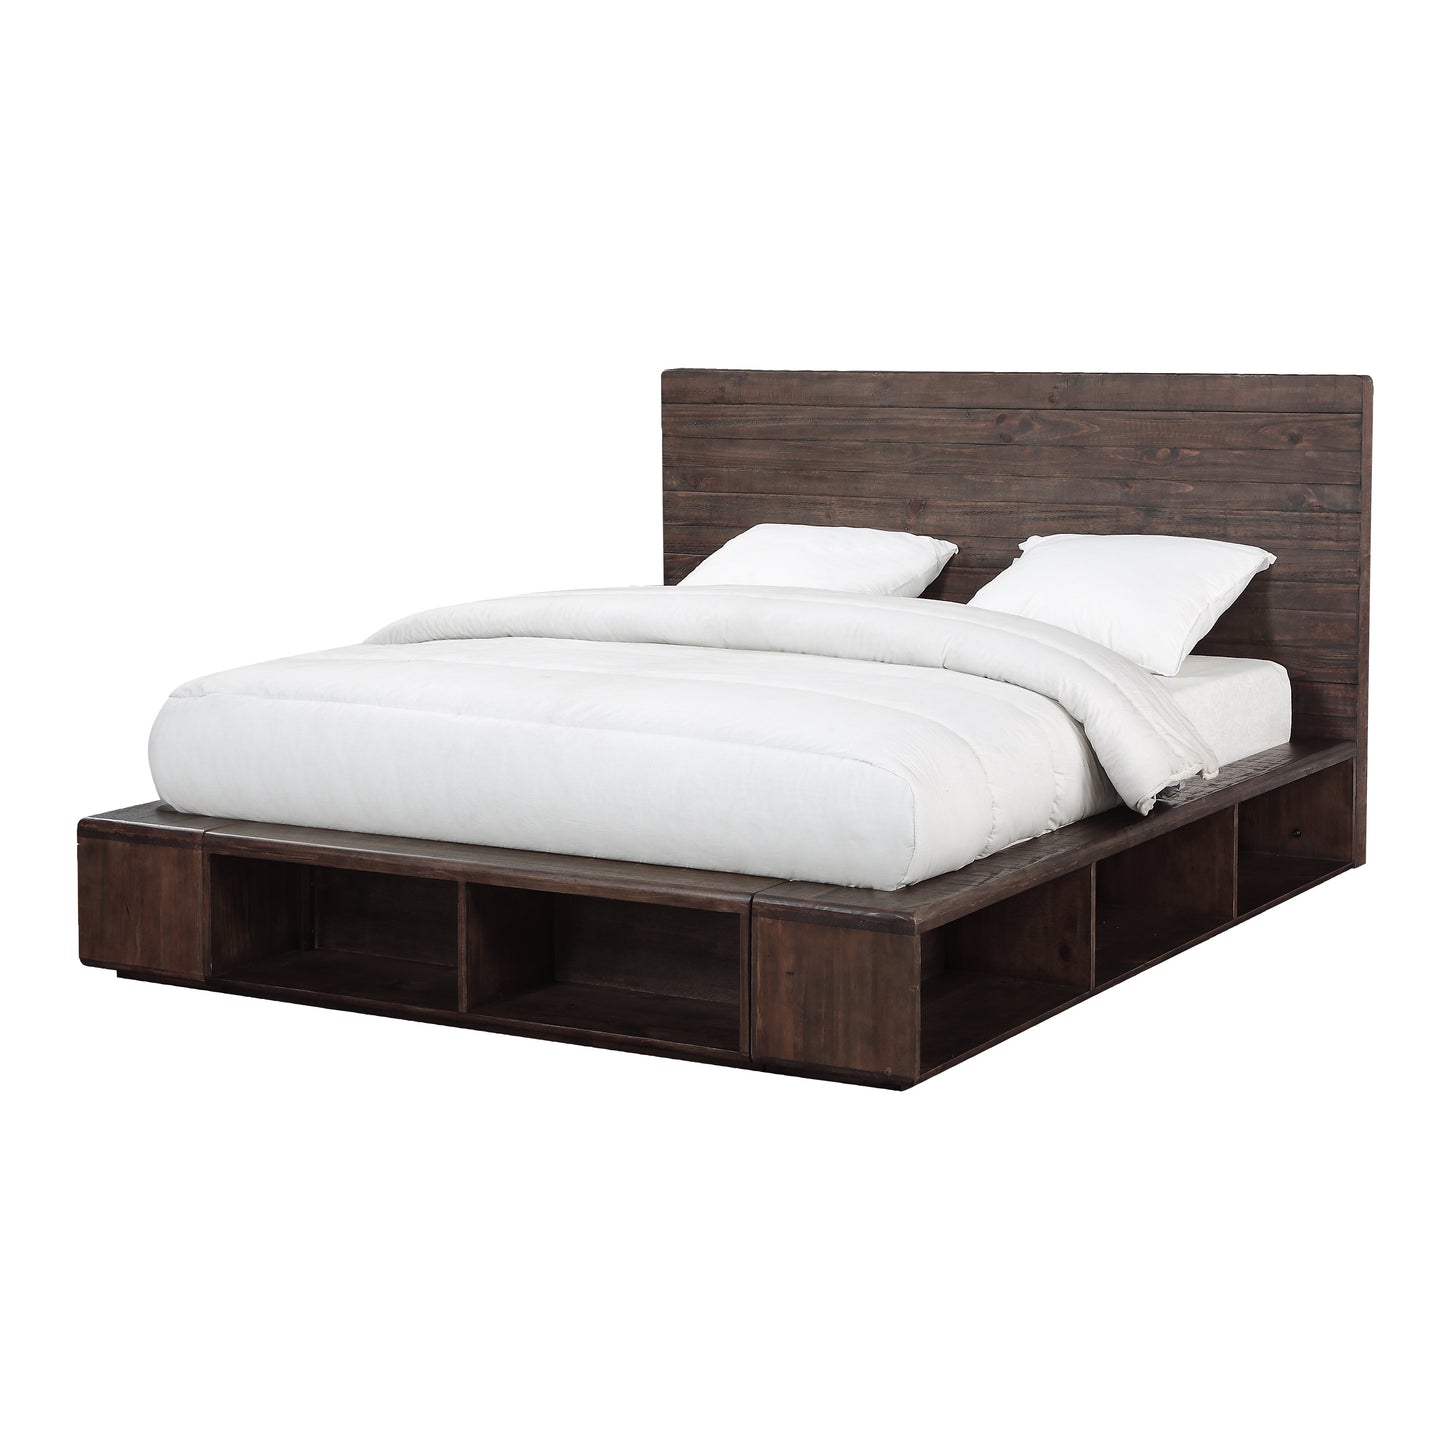 Modus McKinney 6PC Queen Platform Bedroom Set with Chest in Espresso Pine